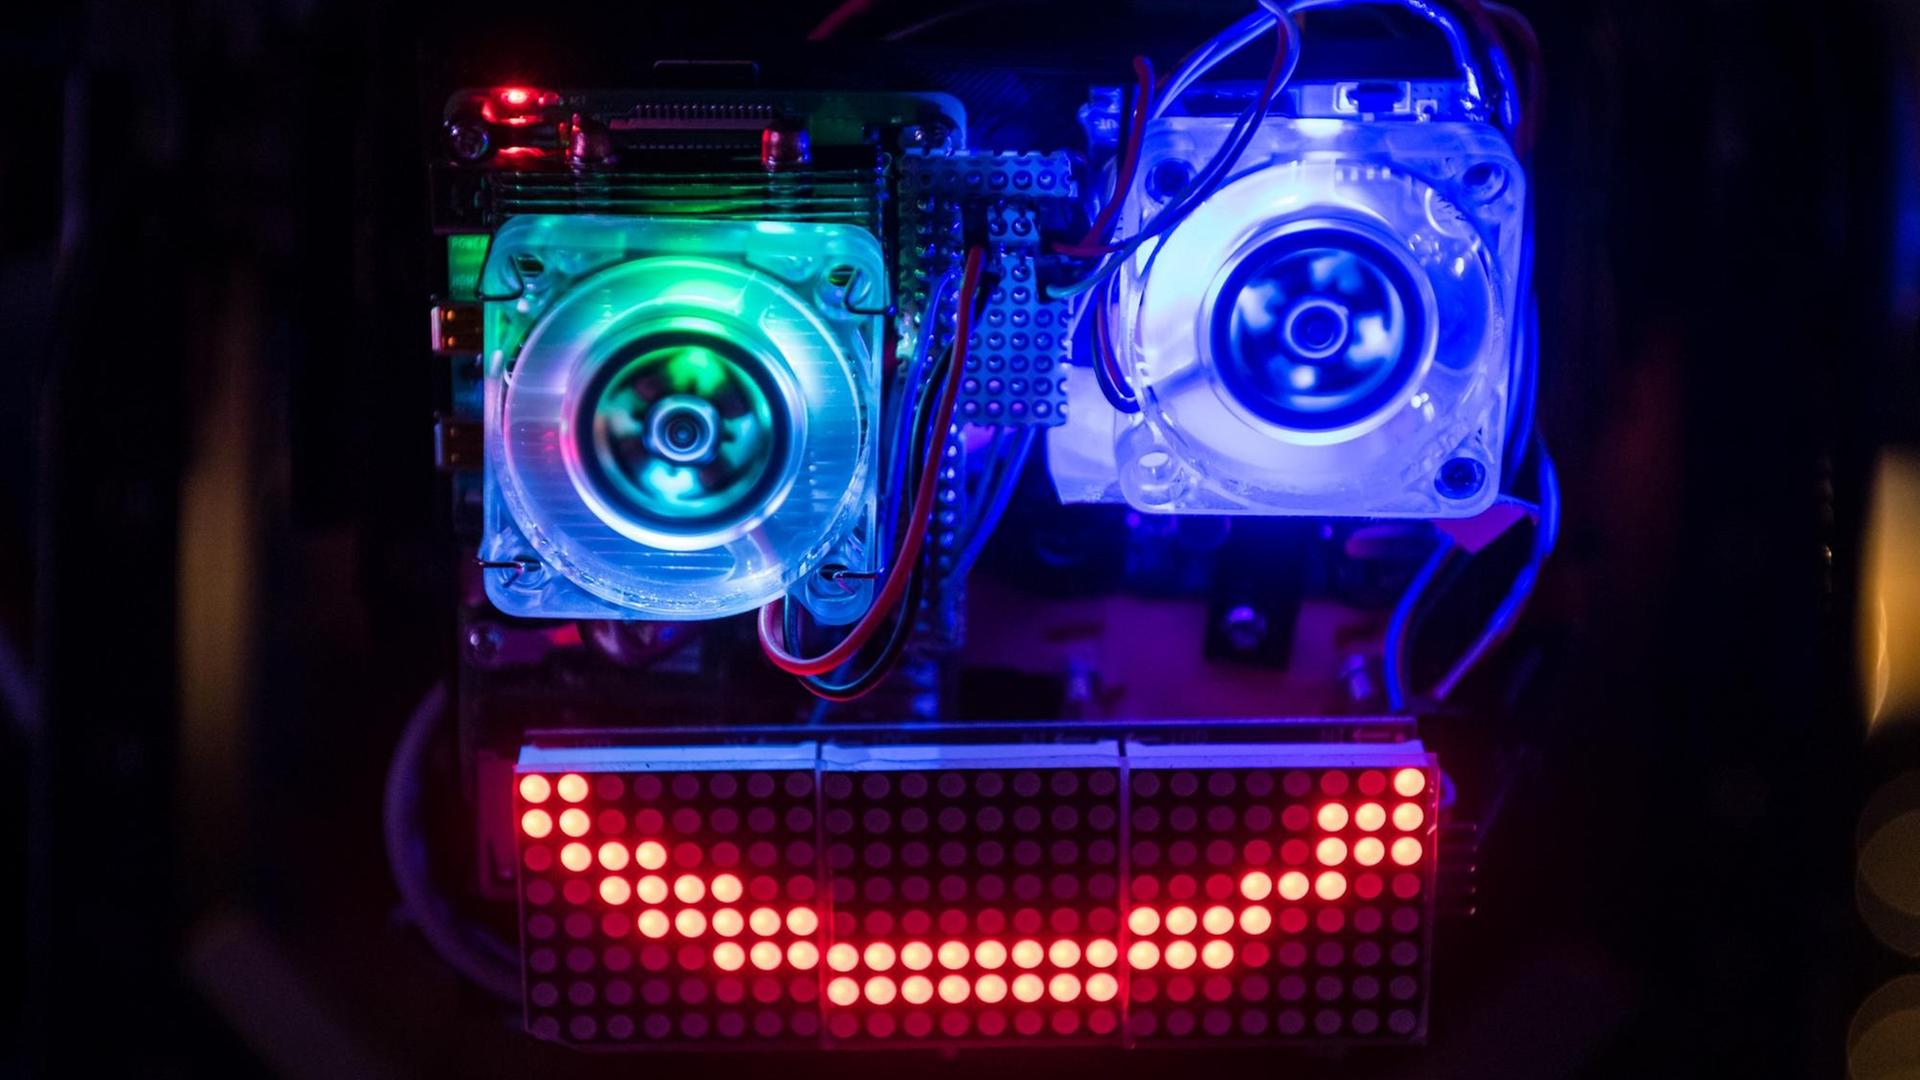 Eine in blau und grün beleuchtete Installation eines Gesichtes aus Computerbauteilen mit rot leuchtendem Mund.